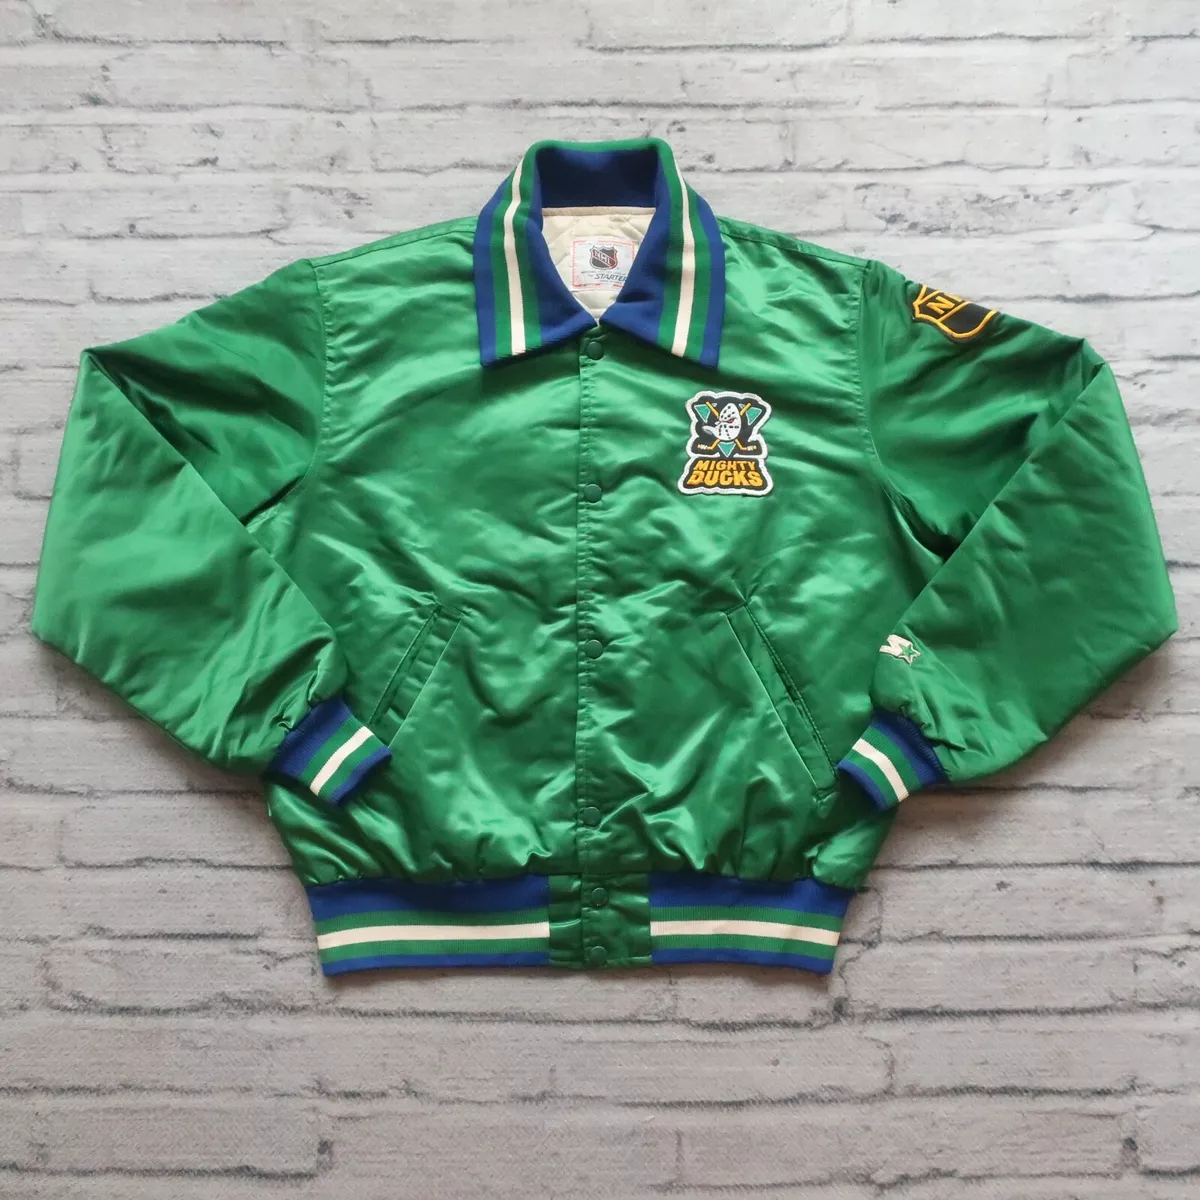 Vintage 90s Anaheim Ducks Starter Jacket -  Singapore